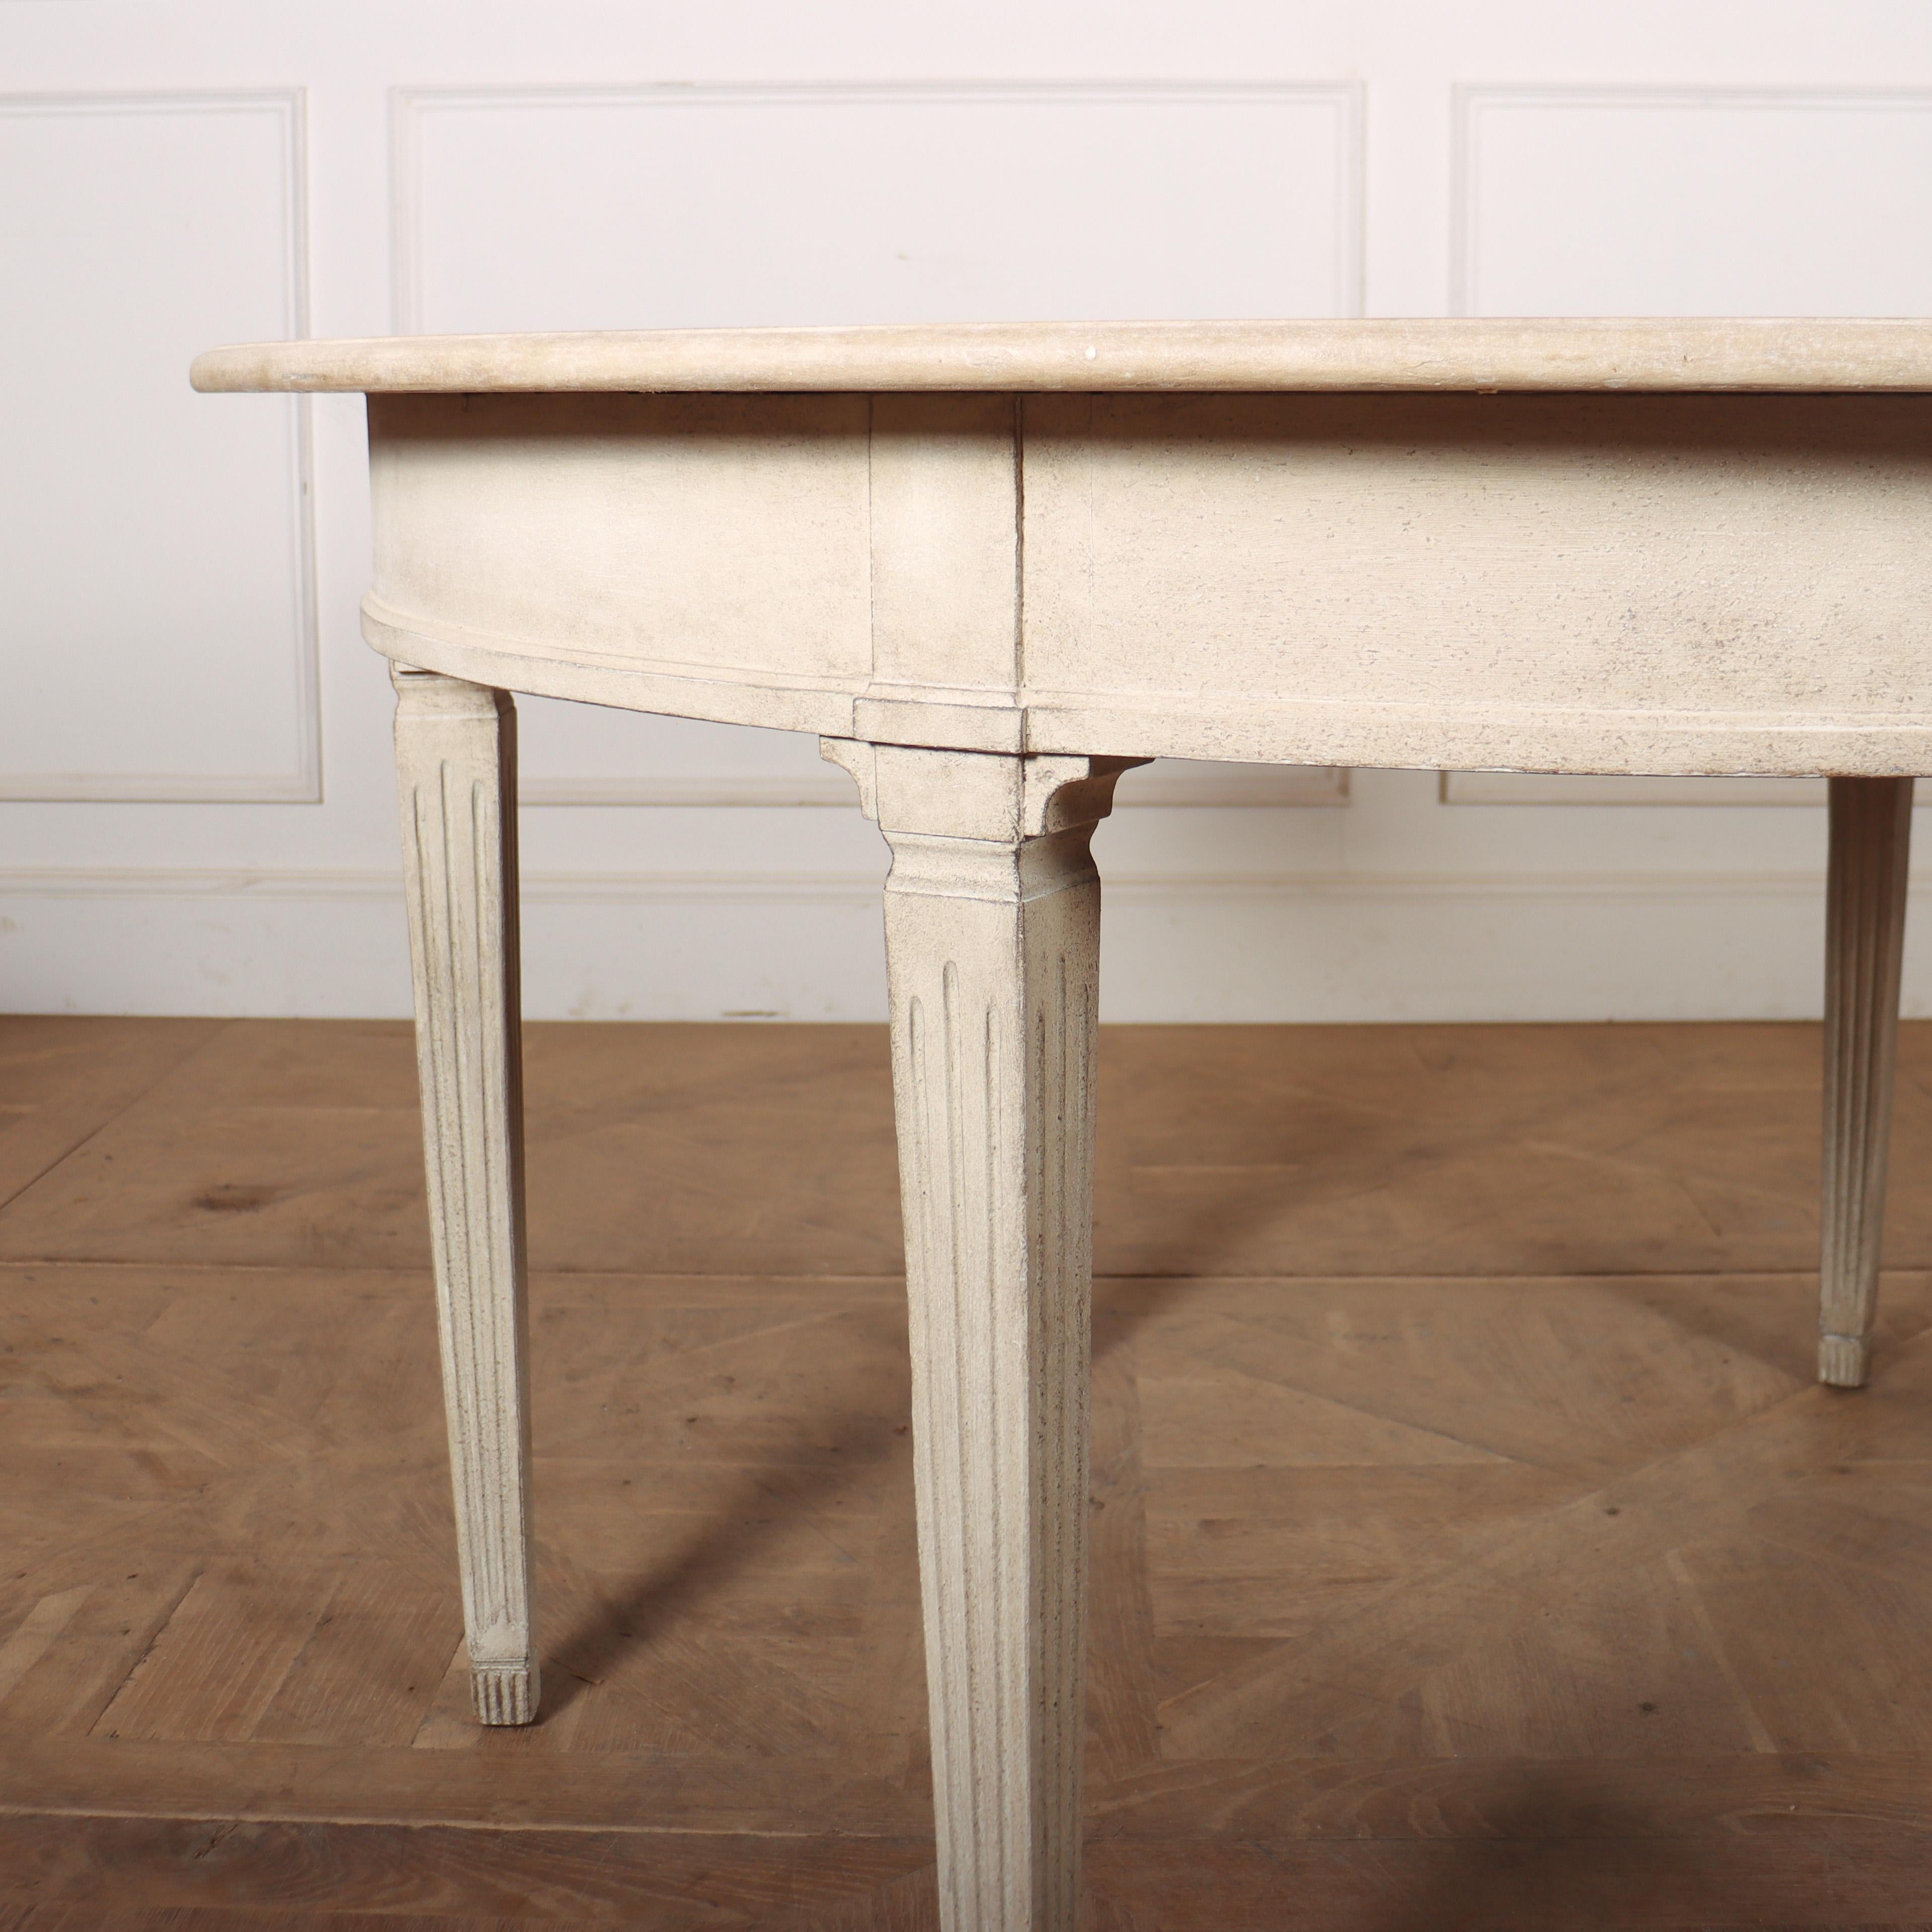 Außergewöhnlicher schwedischer Esstisch aus dem frühen 20. Jahrhundert, der auf sechs geraden, quadratischen, konischen und kannelierten Beinen steht. Der Tisch hat sechs Blätter, die jeweils 25